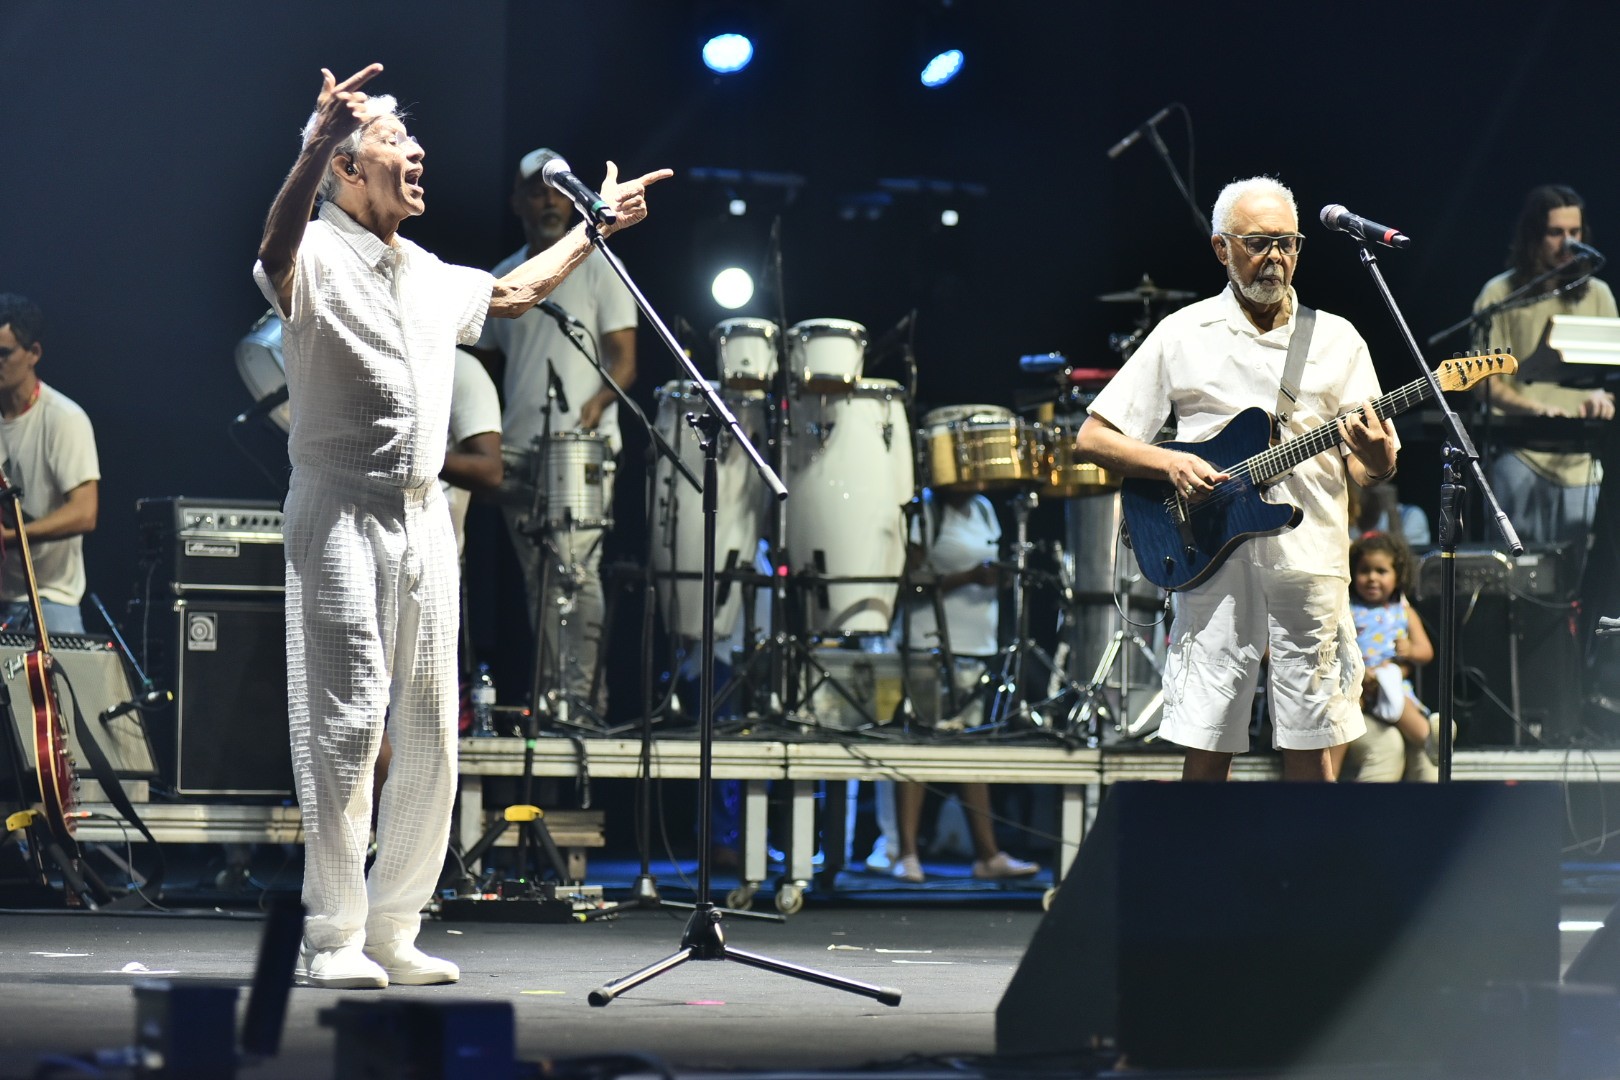 Com netos e filhos no palco, Gilberto Gil faz passagem de som ao lado de Caetano Veloso um dia antes do Festival de Verão Salvador